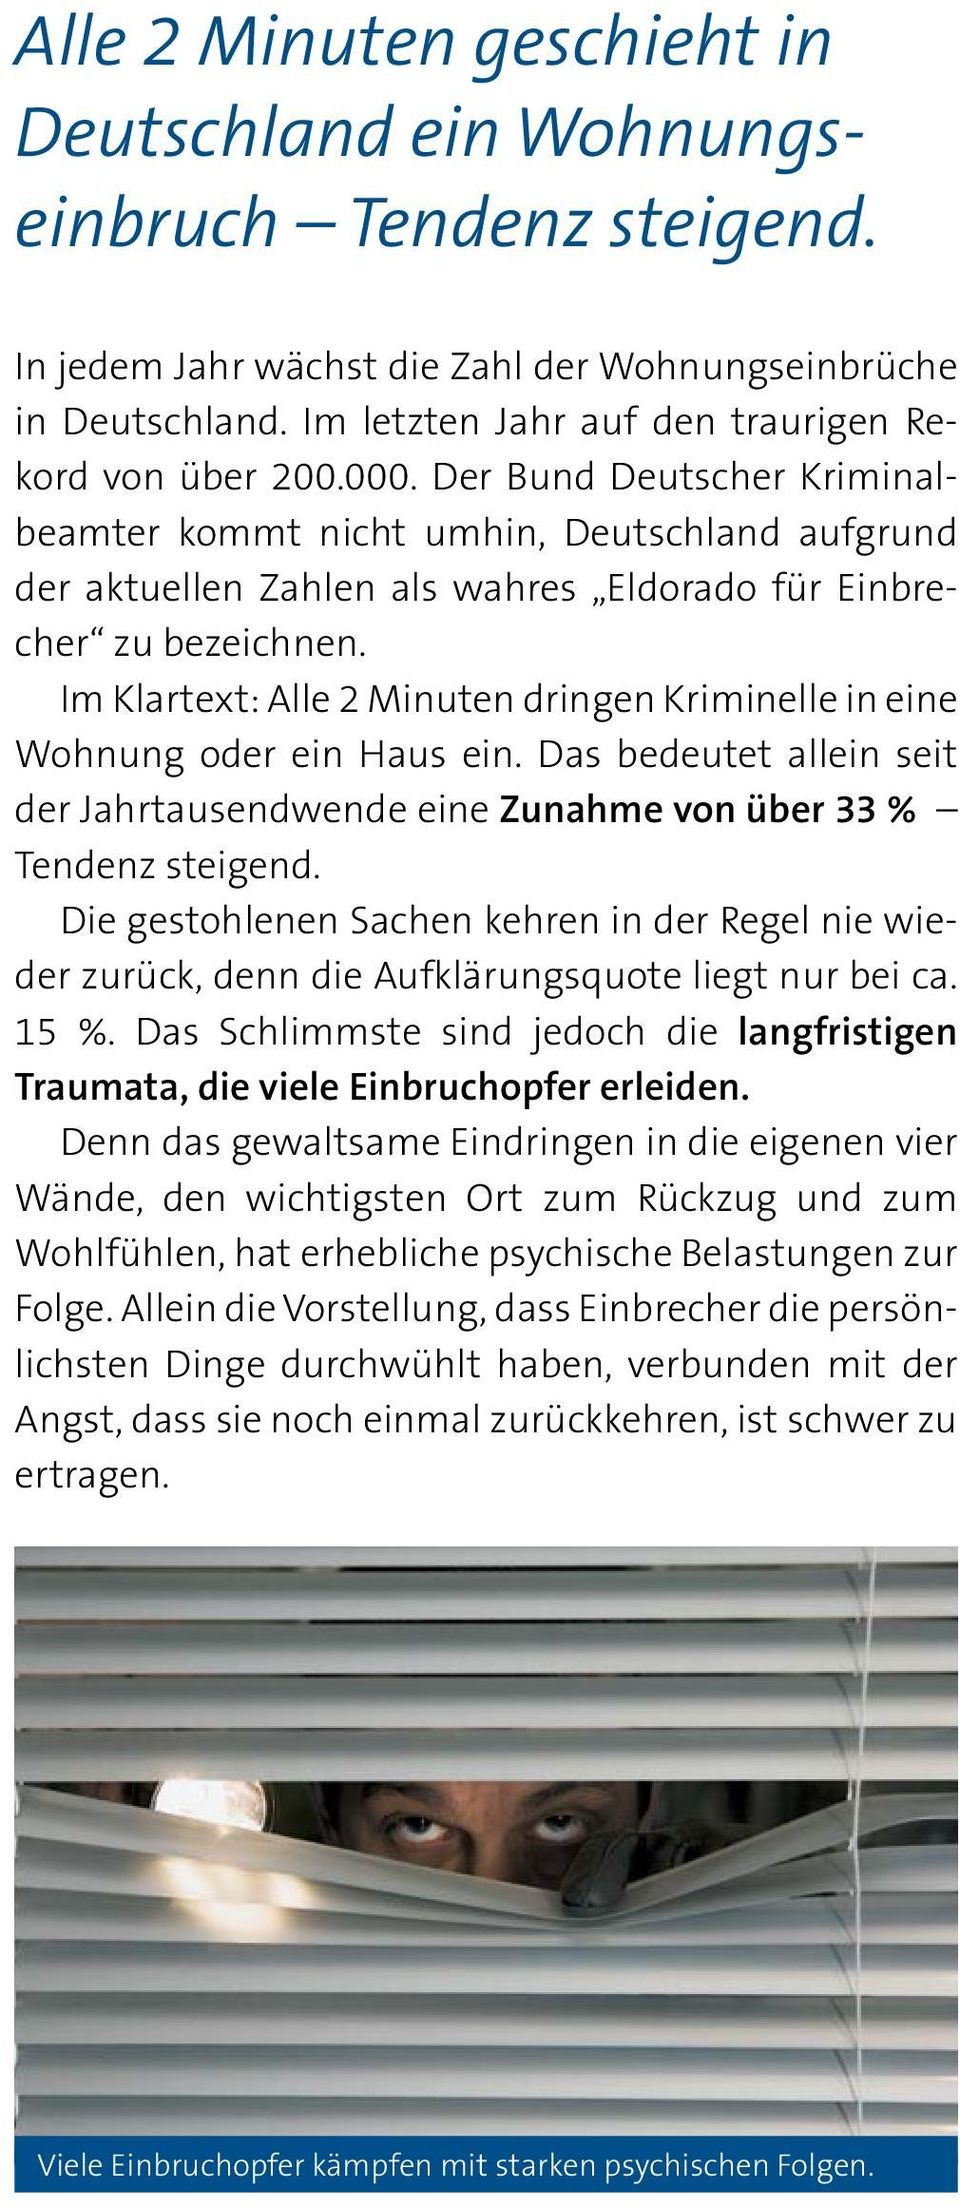 Der Bund Deutscher Kriminalbeamter kommt nicht umhin, Deutschland aufgrund der aktuellen Zahlen als wahres Eldorado für Einbrecher zu bezeichnen.